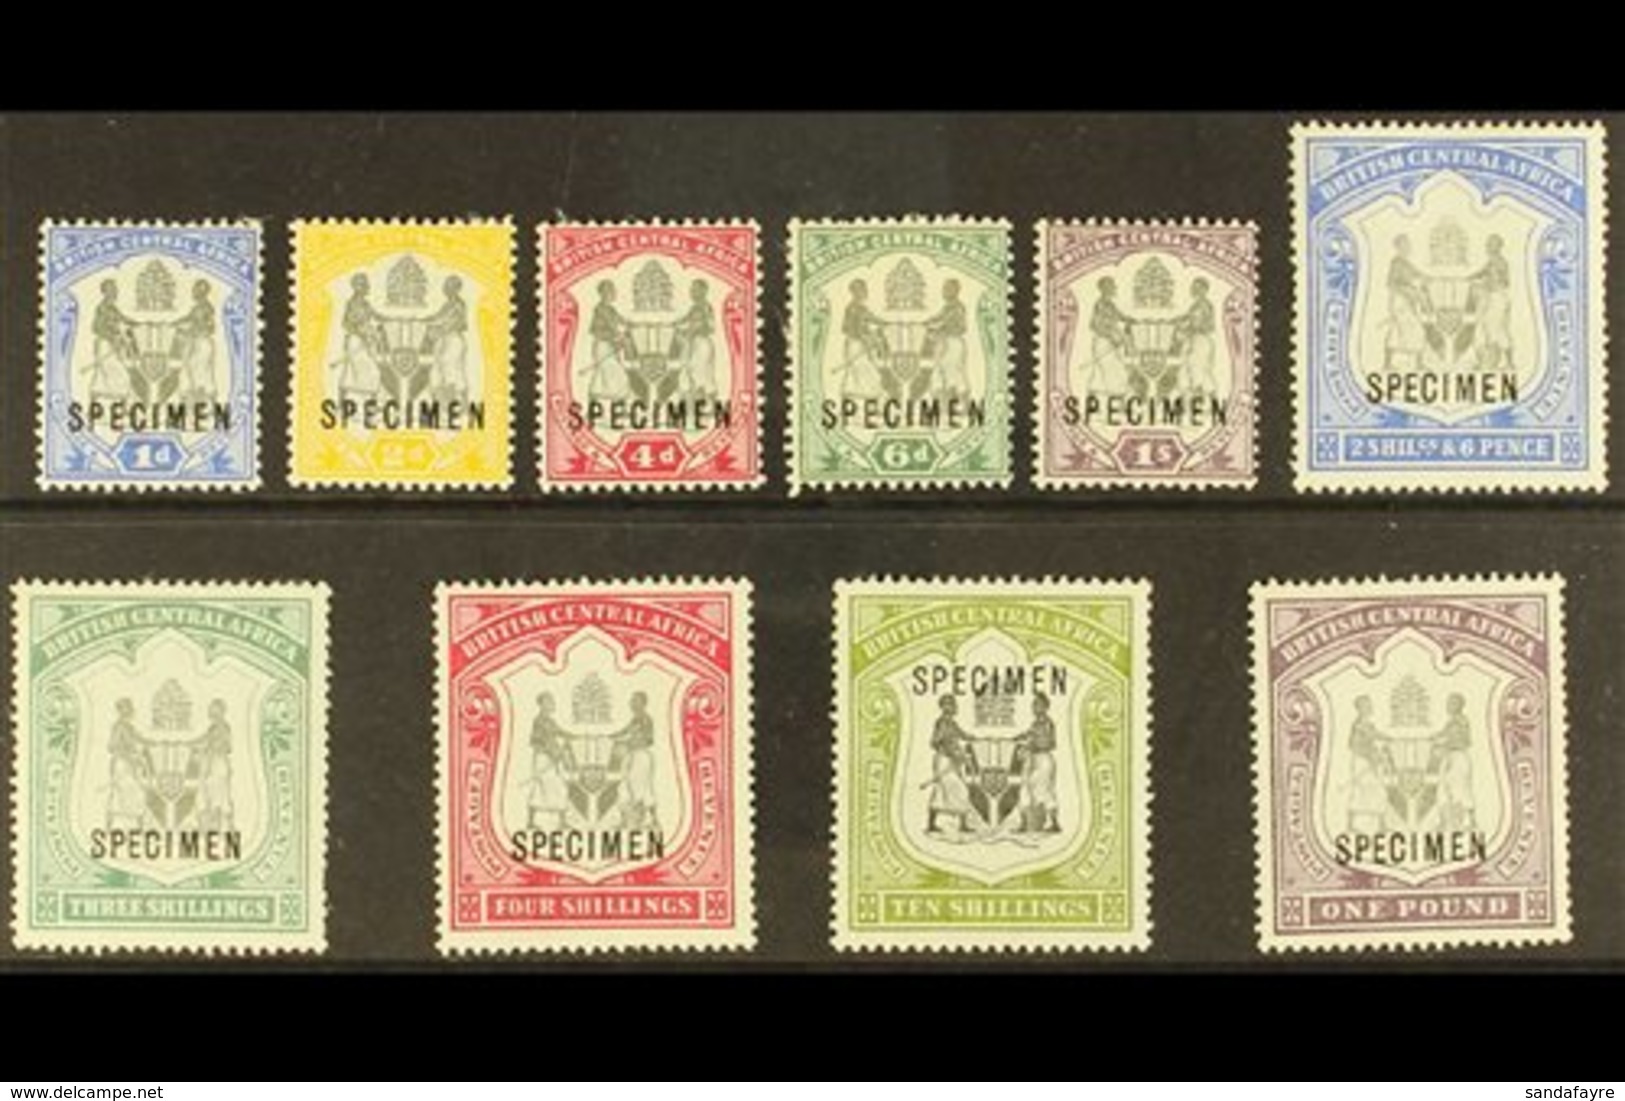 \Y 1897-00\Y Set Complete Opt'd "SPECIMEN", SG 43s/51s, Mint Part OG, Lovely Fresh Stamps (10) For More Images, Please V - Nyasaland (1907-1953)